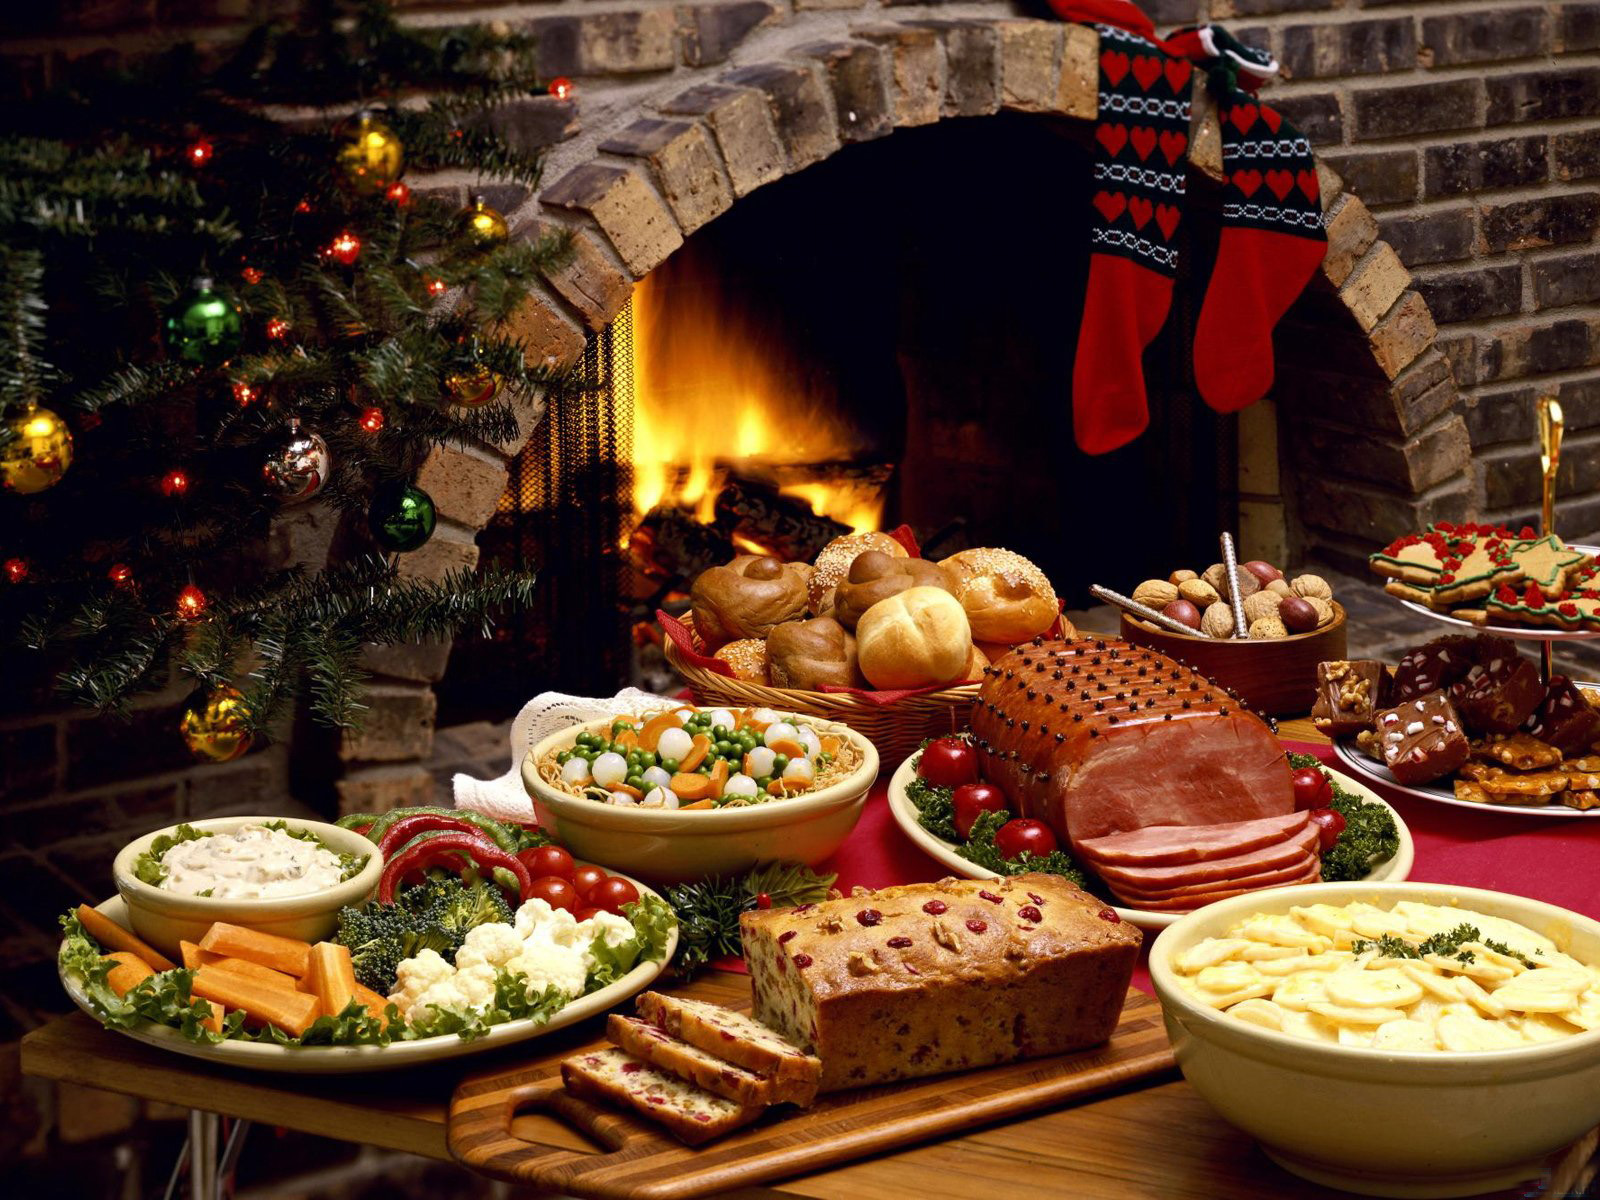 Christmas Dinner Ideas